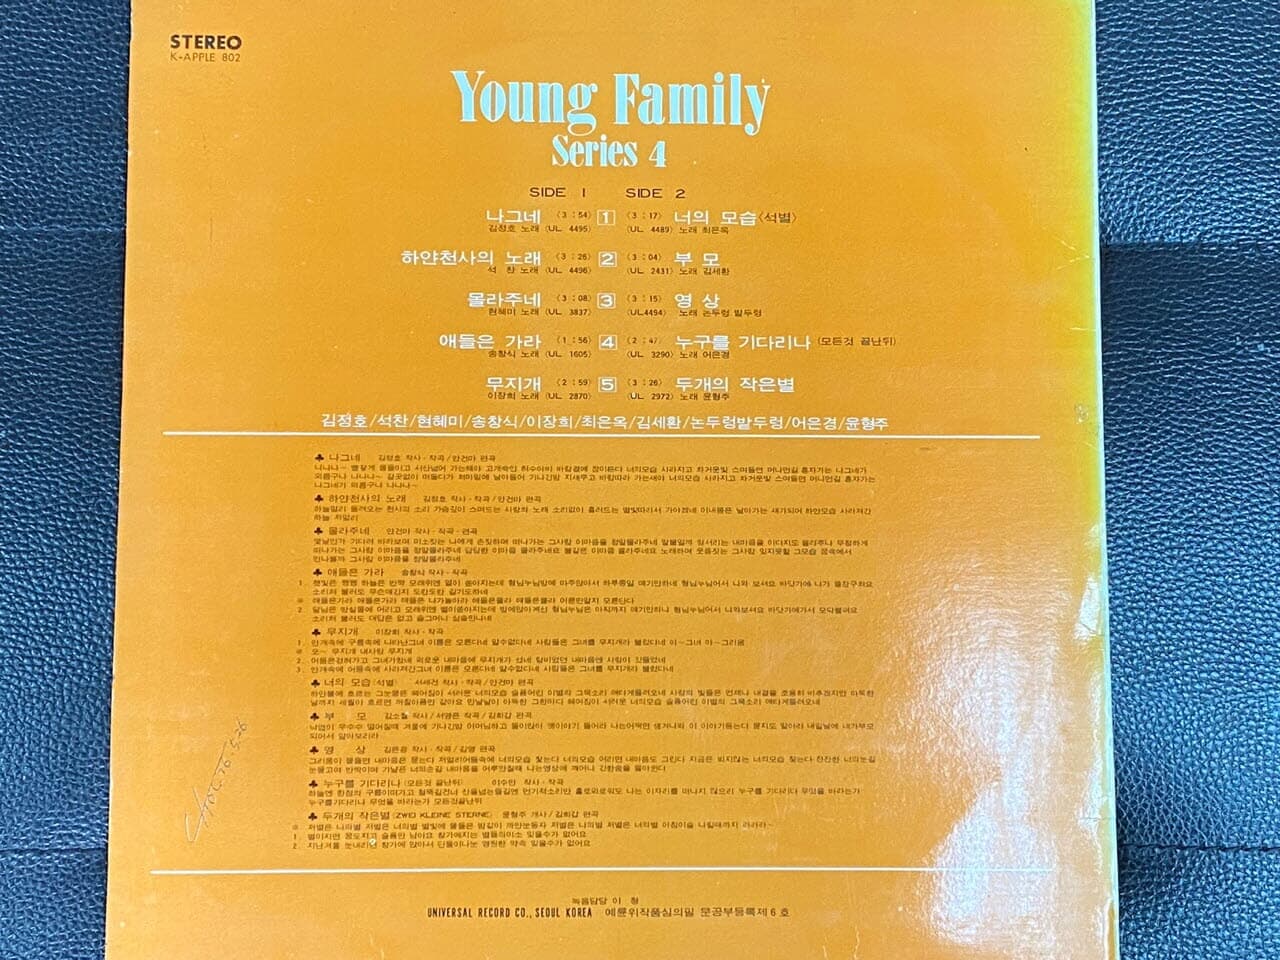 [LP] 영훼밀리 씨리즈 4 - Young Family Series 영훼밀리 씨리즈 4 LP [유니버살 K-APPLE 802]